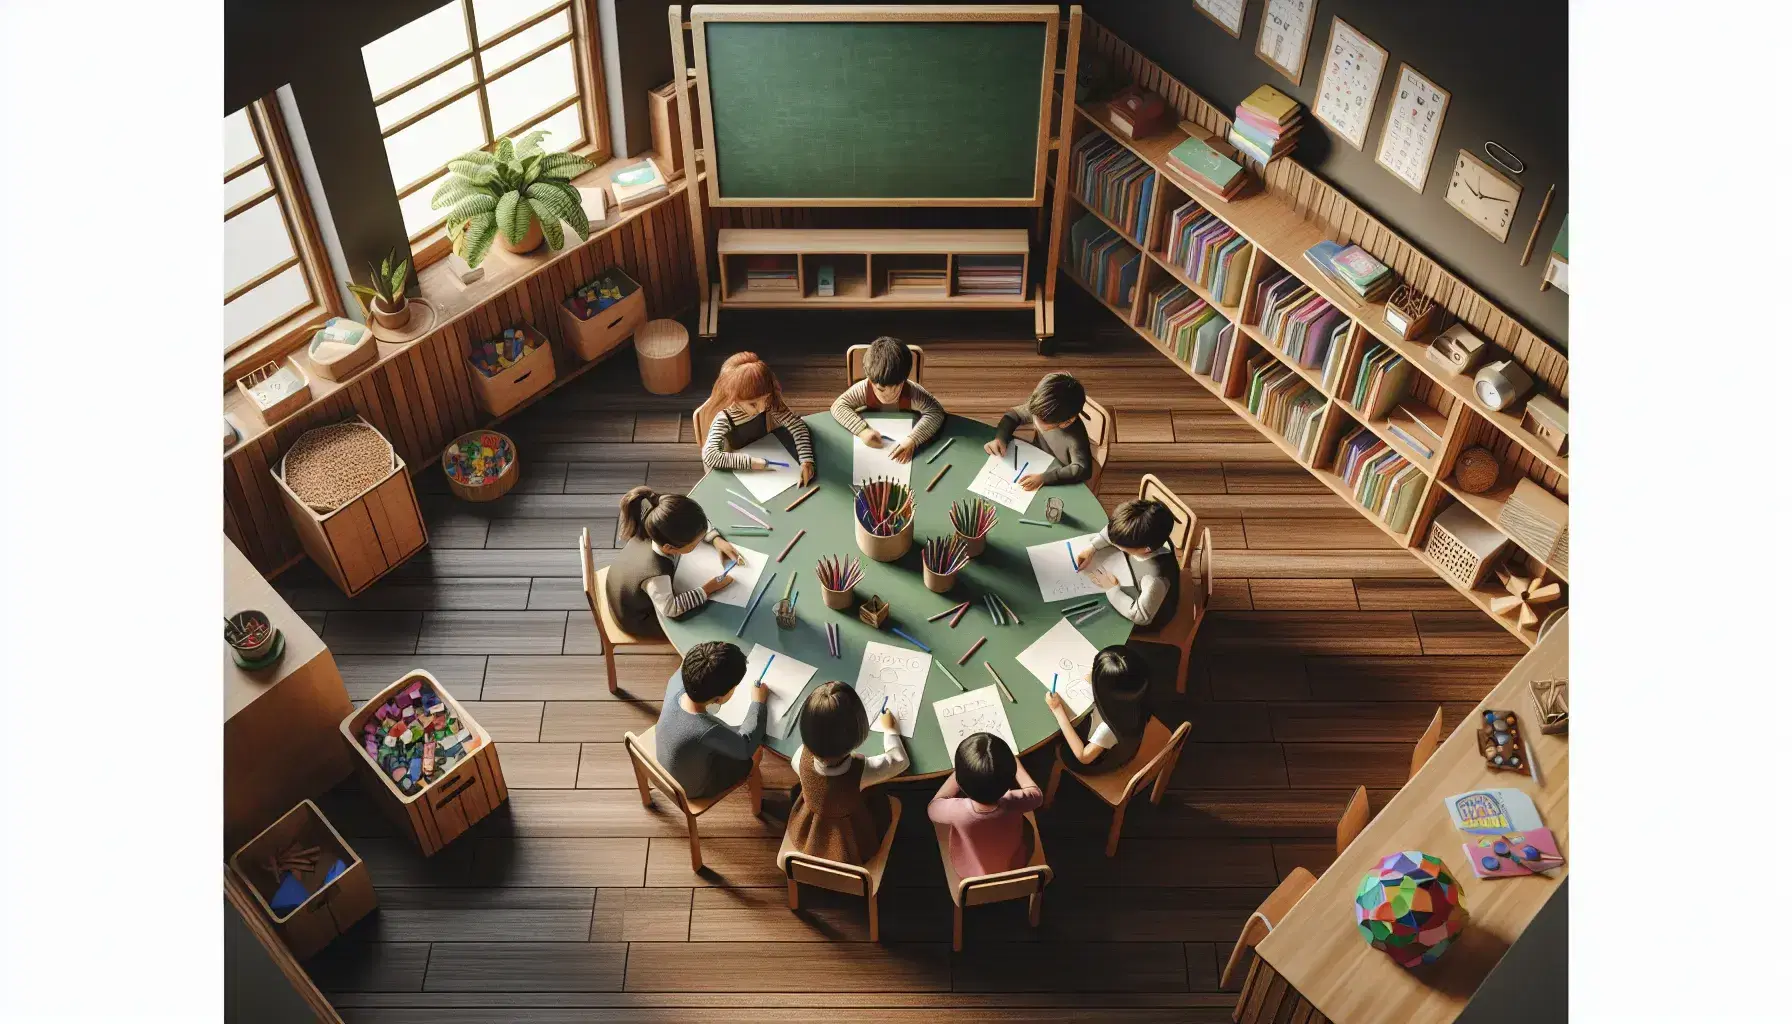 Aula de primaria con niños concentrados en actividad grupal, mesa redonda con papeles y lápices de colores, pizarra verde y estantes con libros.